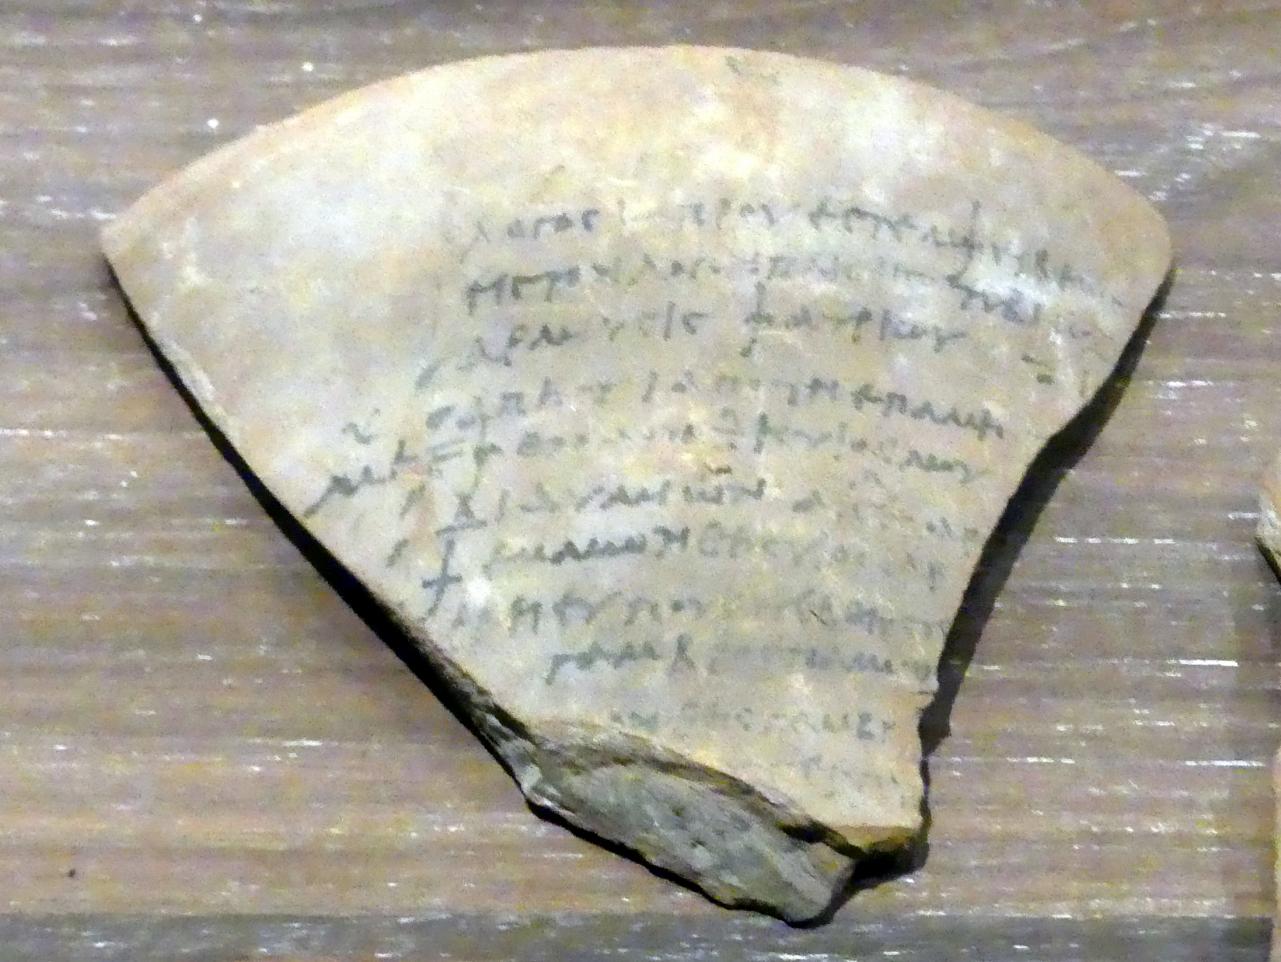 Ostrakon (Scherbe) mit koptischem Text, Koptische Zeit, 200 - 800, 300 - 600